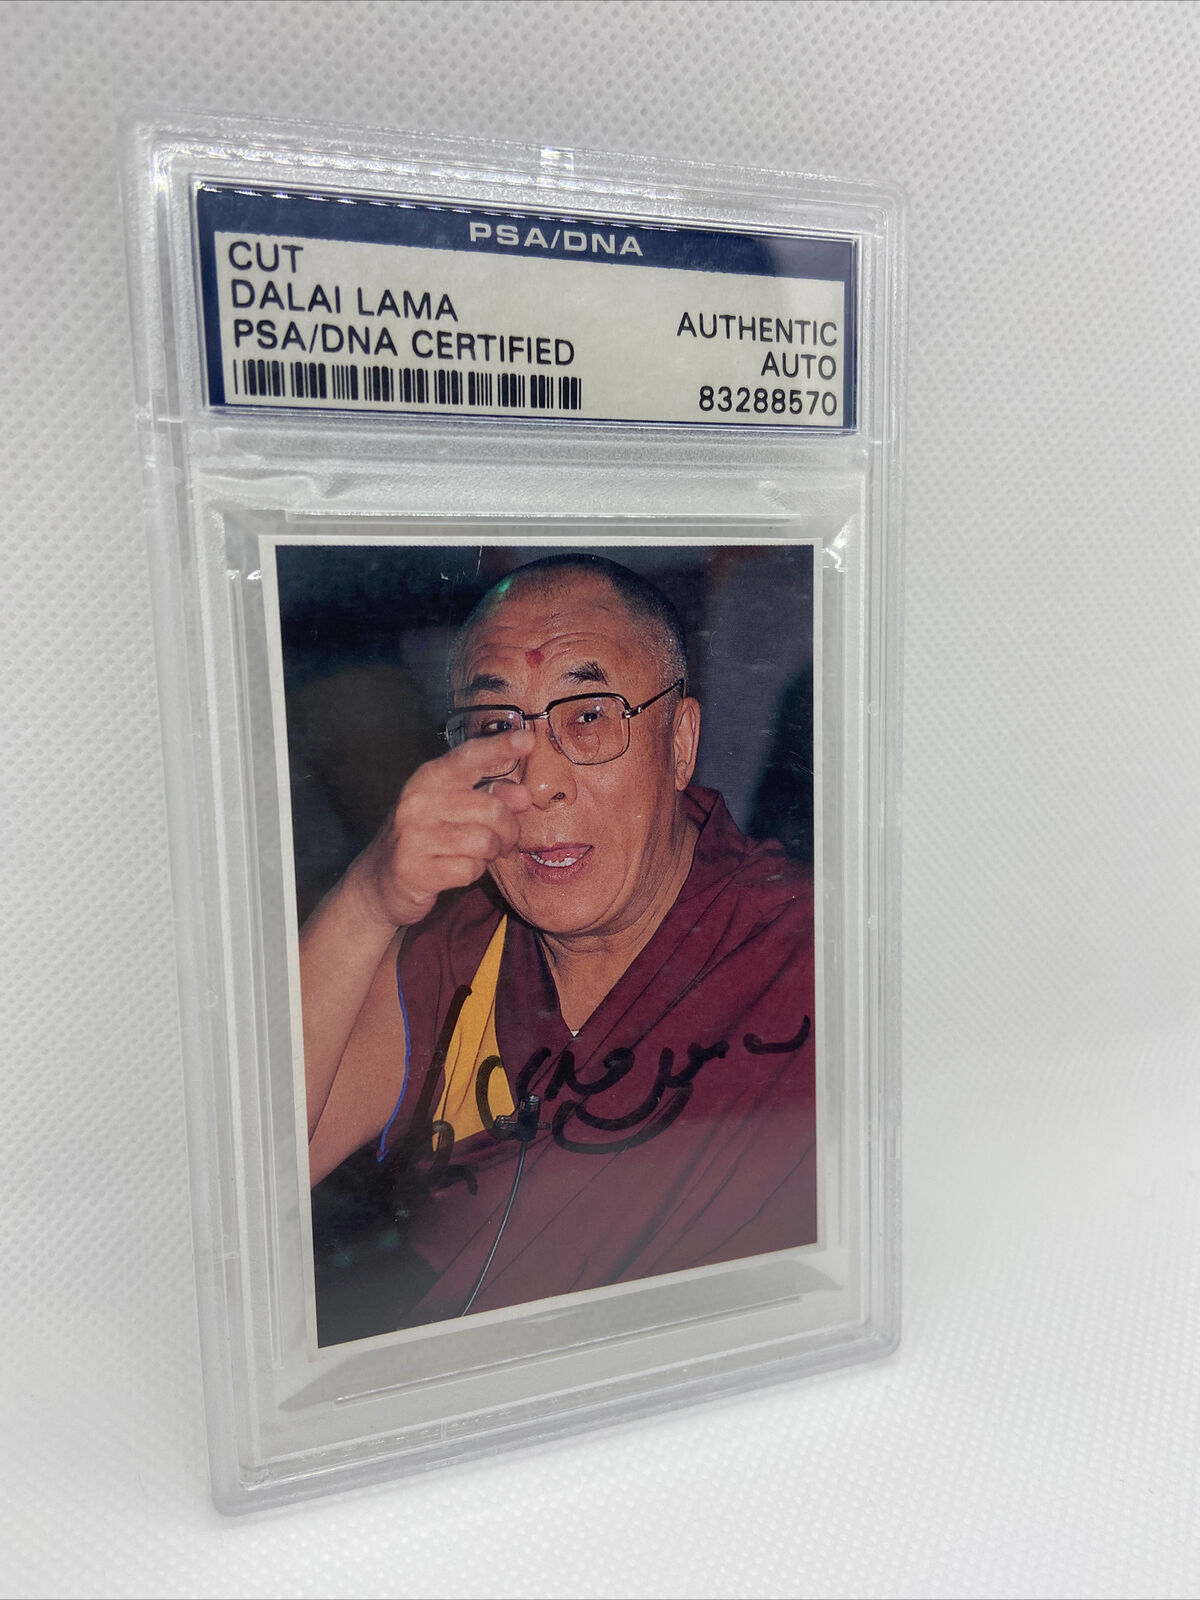 Dalai Lama Signed Photo Autographed PSA/DNA AUTO - Very Rare